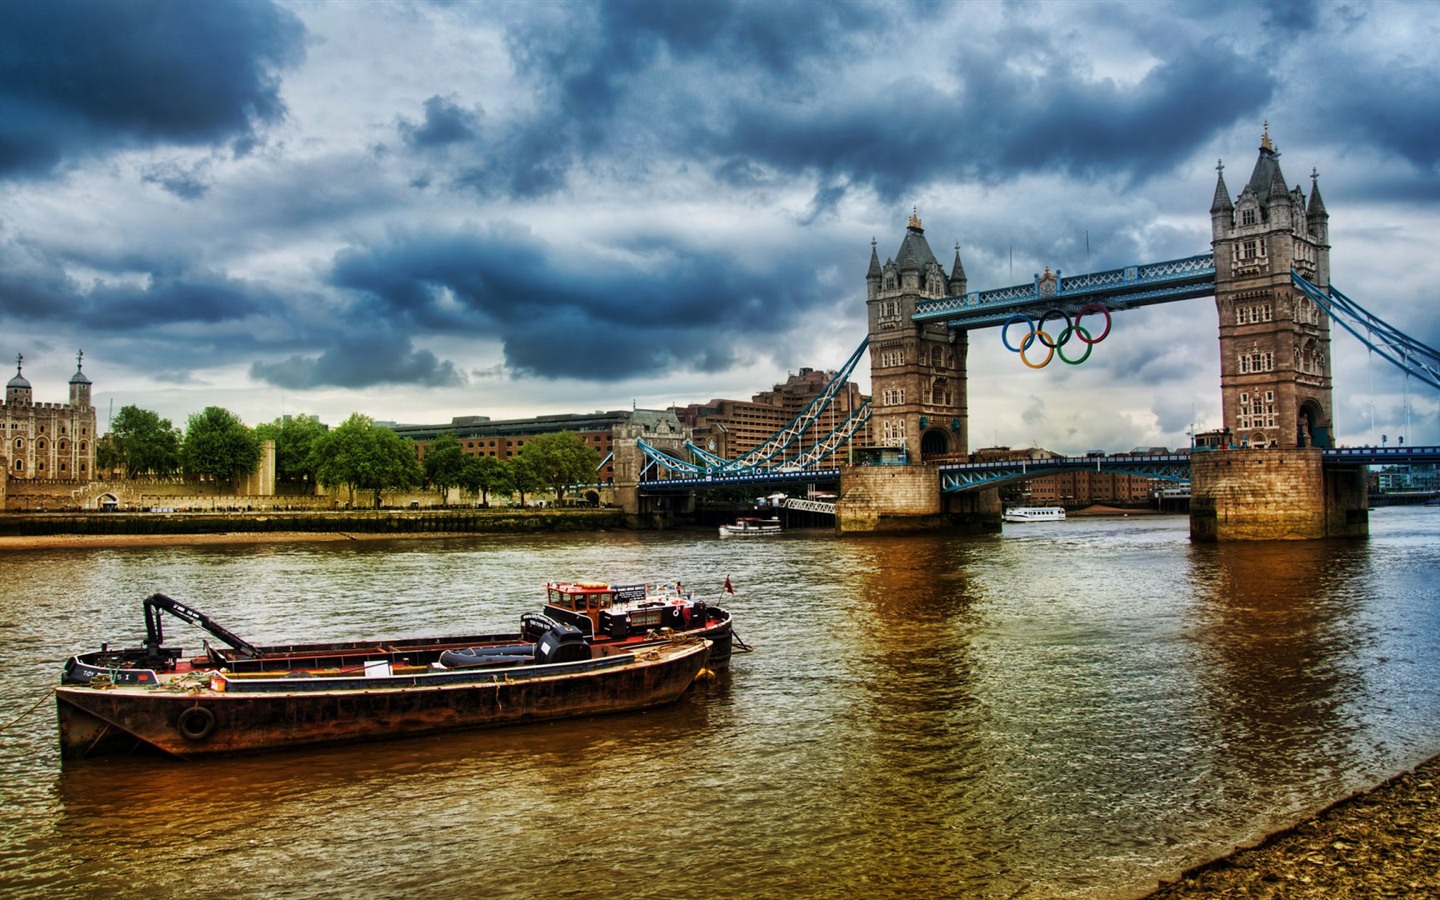 Londres 2012 Olimpiadas fondos temáticos (1) #26 - 1440x900